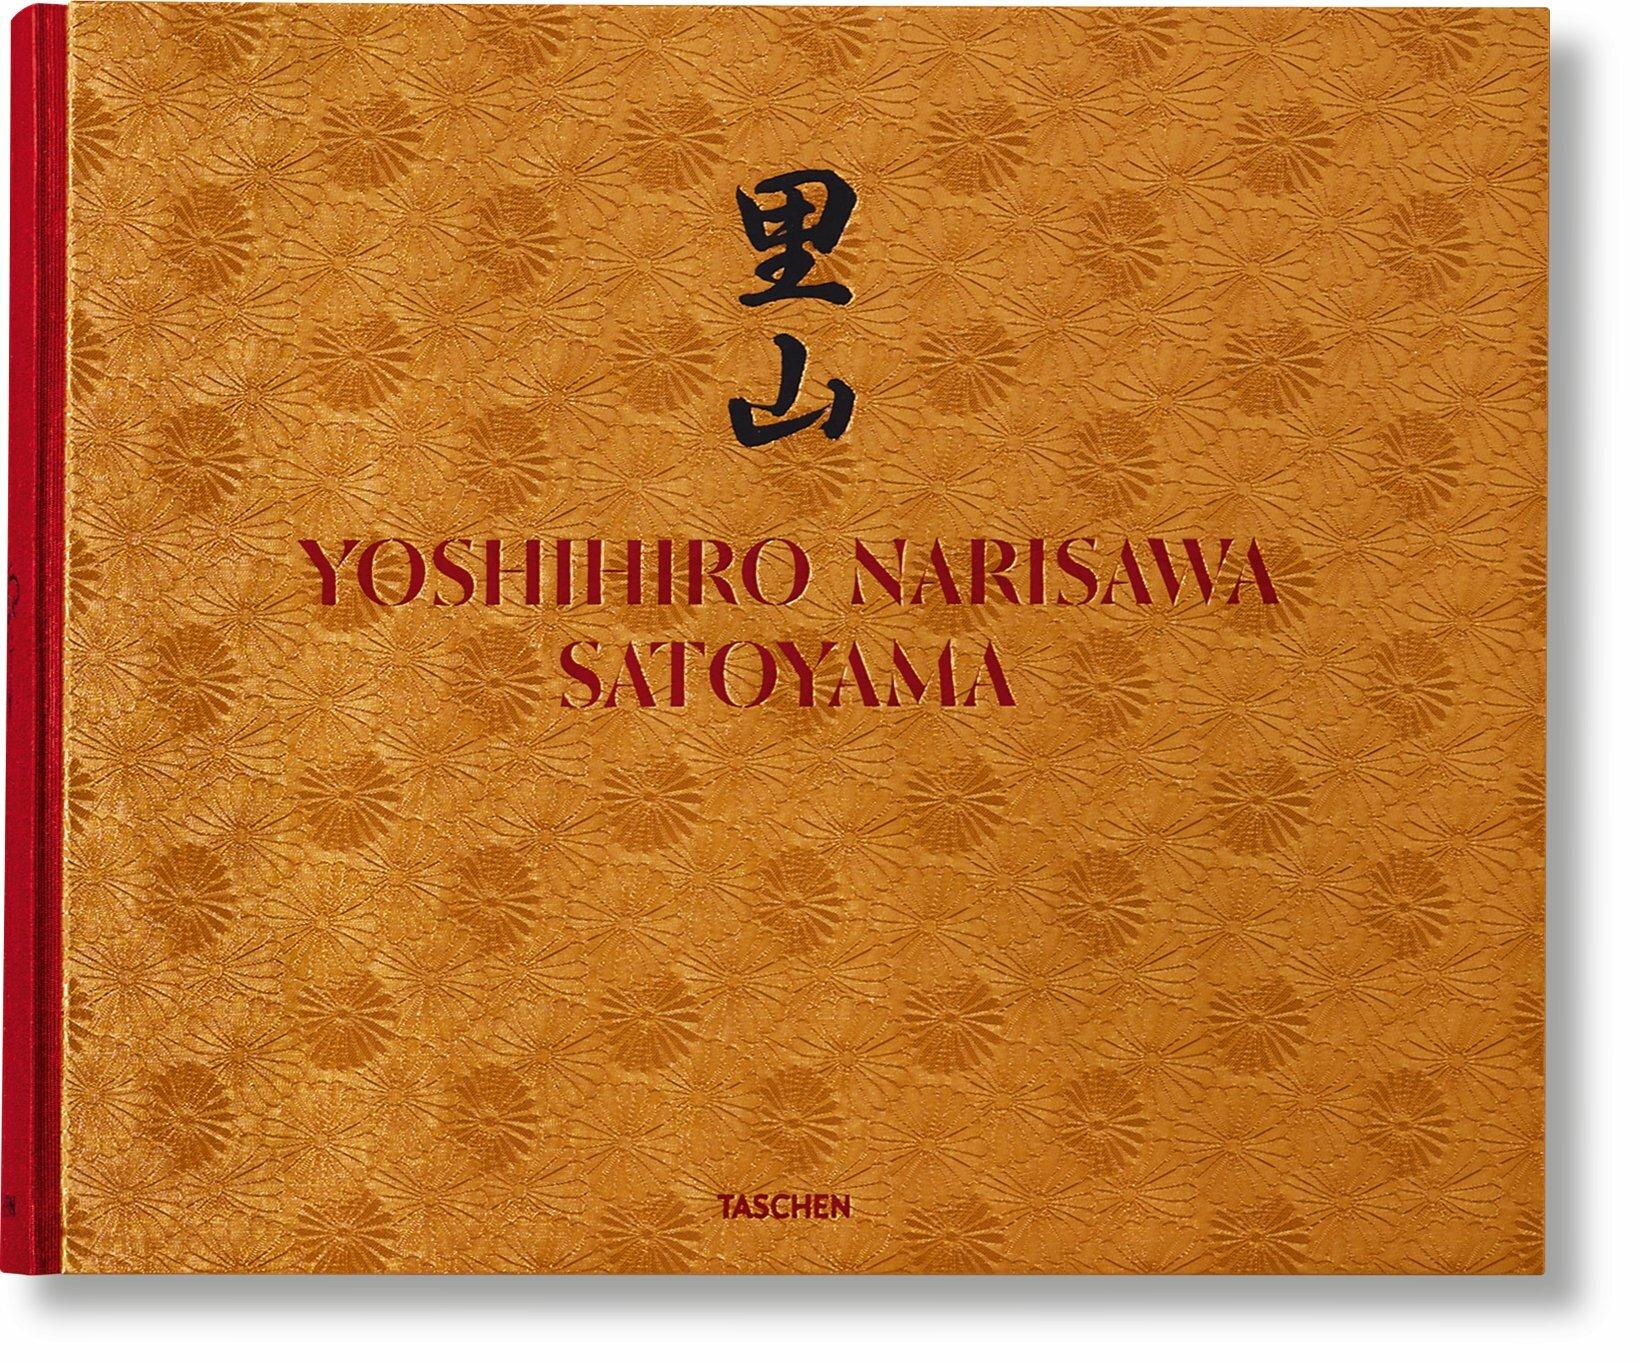 Gastronomie durable

Le manifeste de Yoshihiro Narisawa sur la cuisine en harmonie avec le monde naturel

Le chef japonais primé Yoshihiro Narisawa s'est tourné vers sa terre natale et la nature pour développer sa cuisine satoyama innovante et sa